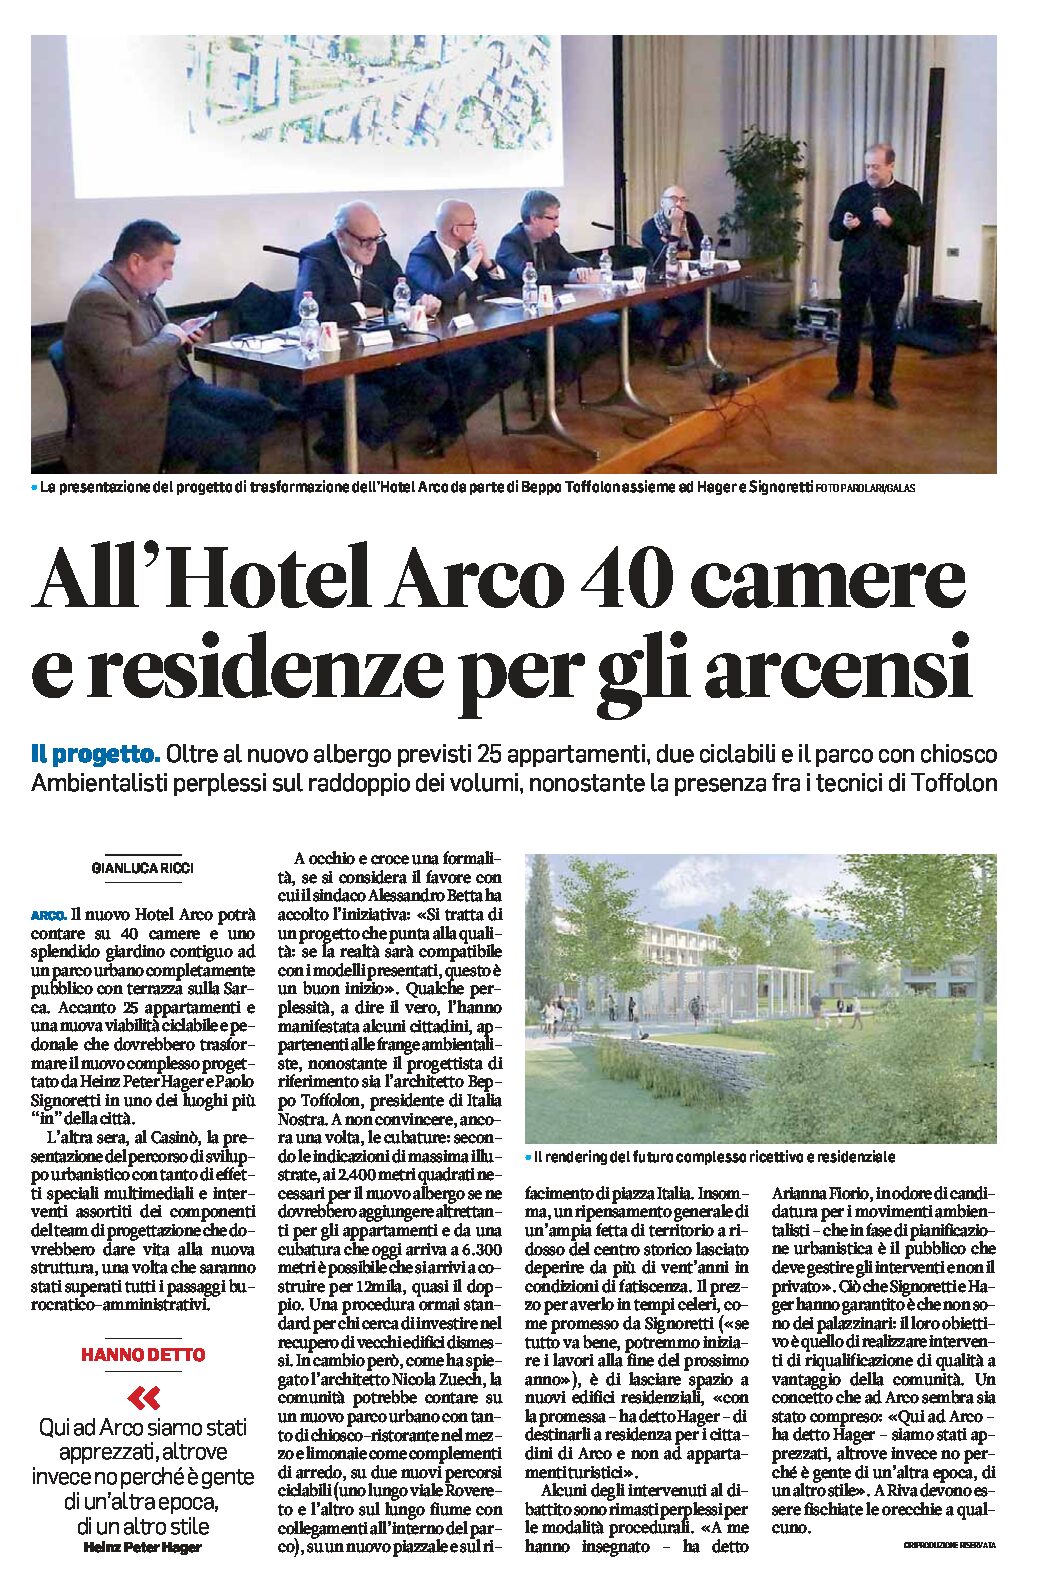 Arco, progetto Hotel Arco: 40 camere e residenze per gli arcensi, 2 ciclabili e parco pubblico